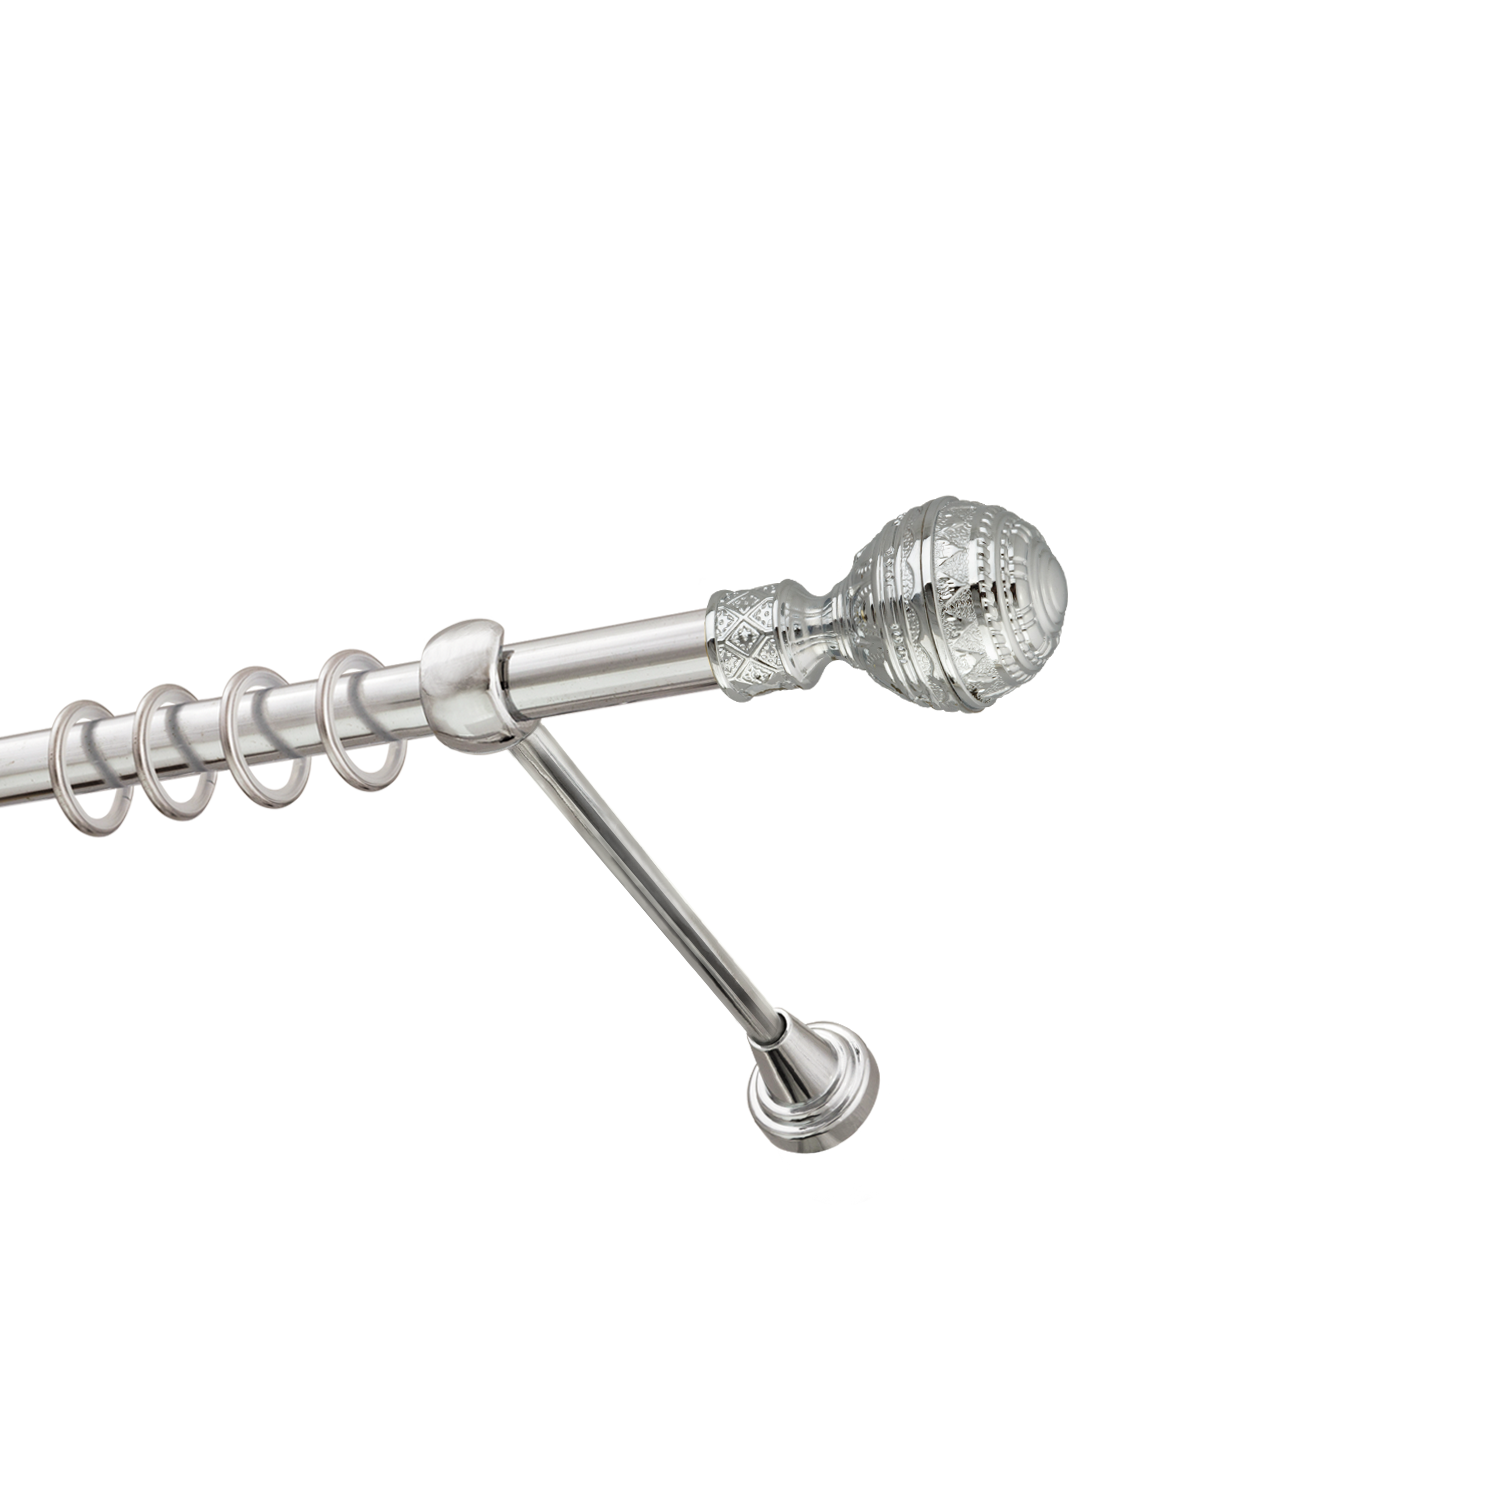 Металлический карниз для штор Роял, однорядный 16 мм, серебро, гладкая штанга, длина 180 см - фото Wikidecor.ru